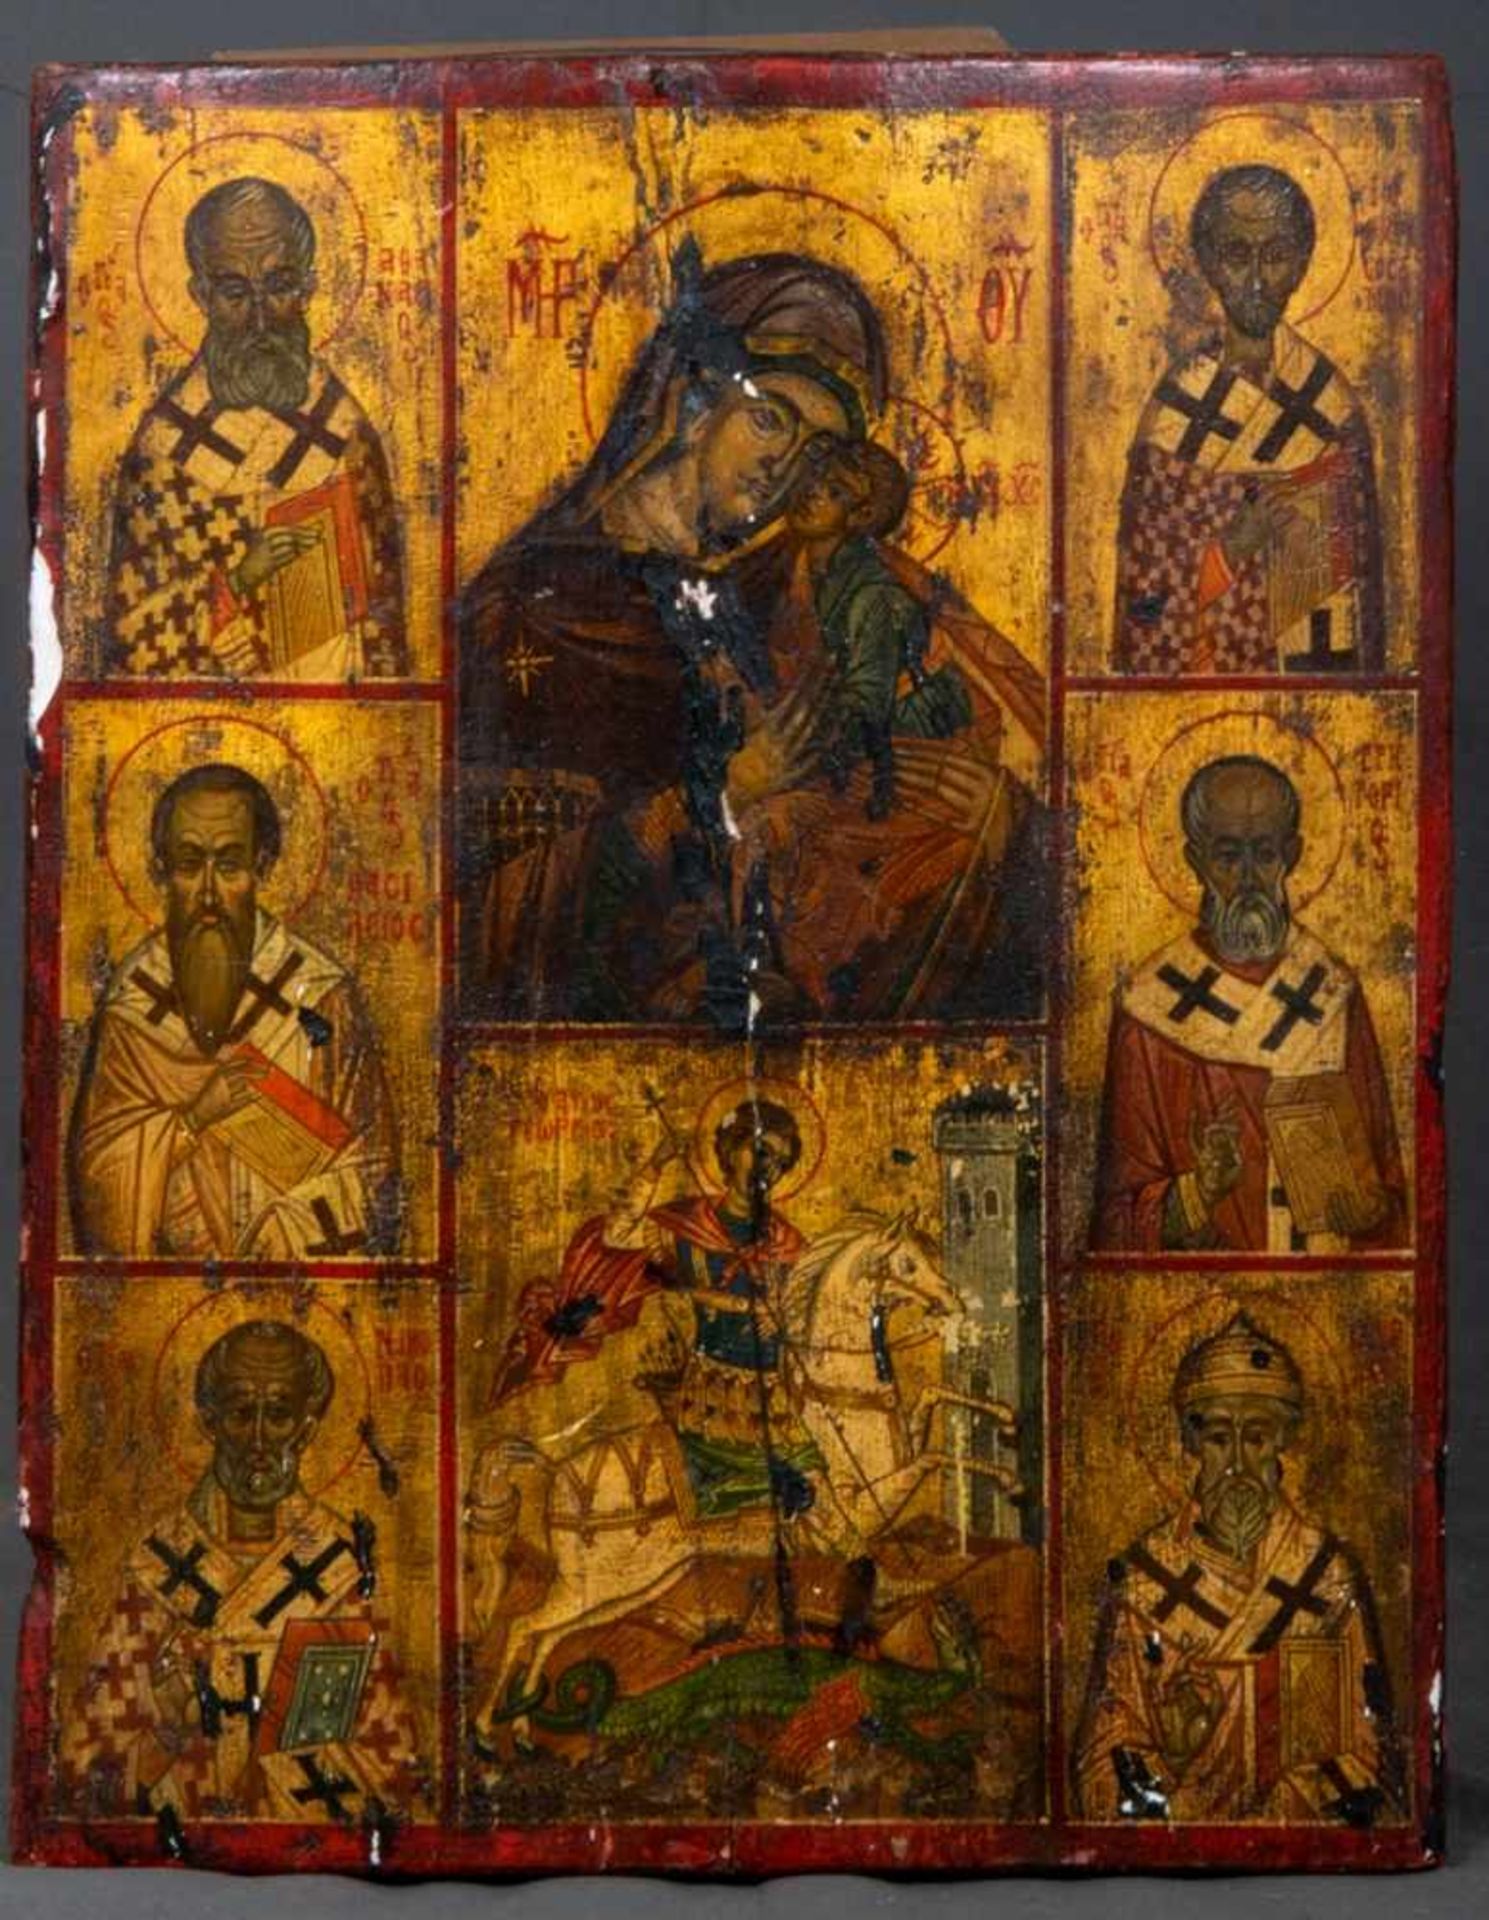 Alte oder antike 8 Felder-Ikone u. a. mit Darstellung des Heiligen Georg als Drachentöter. Eitempera